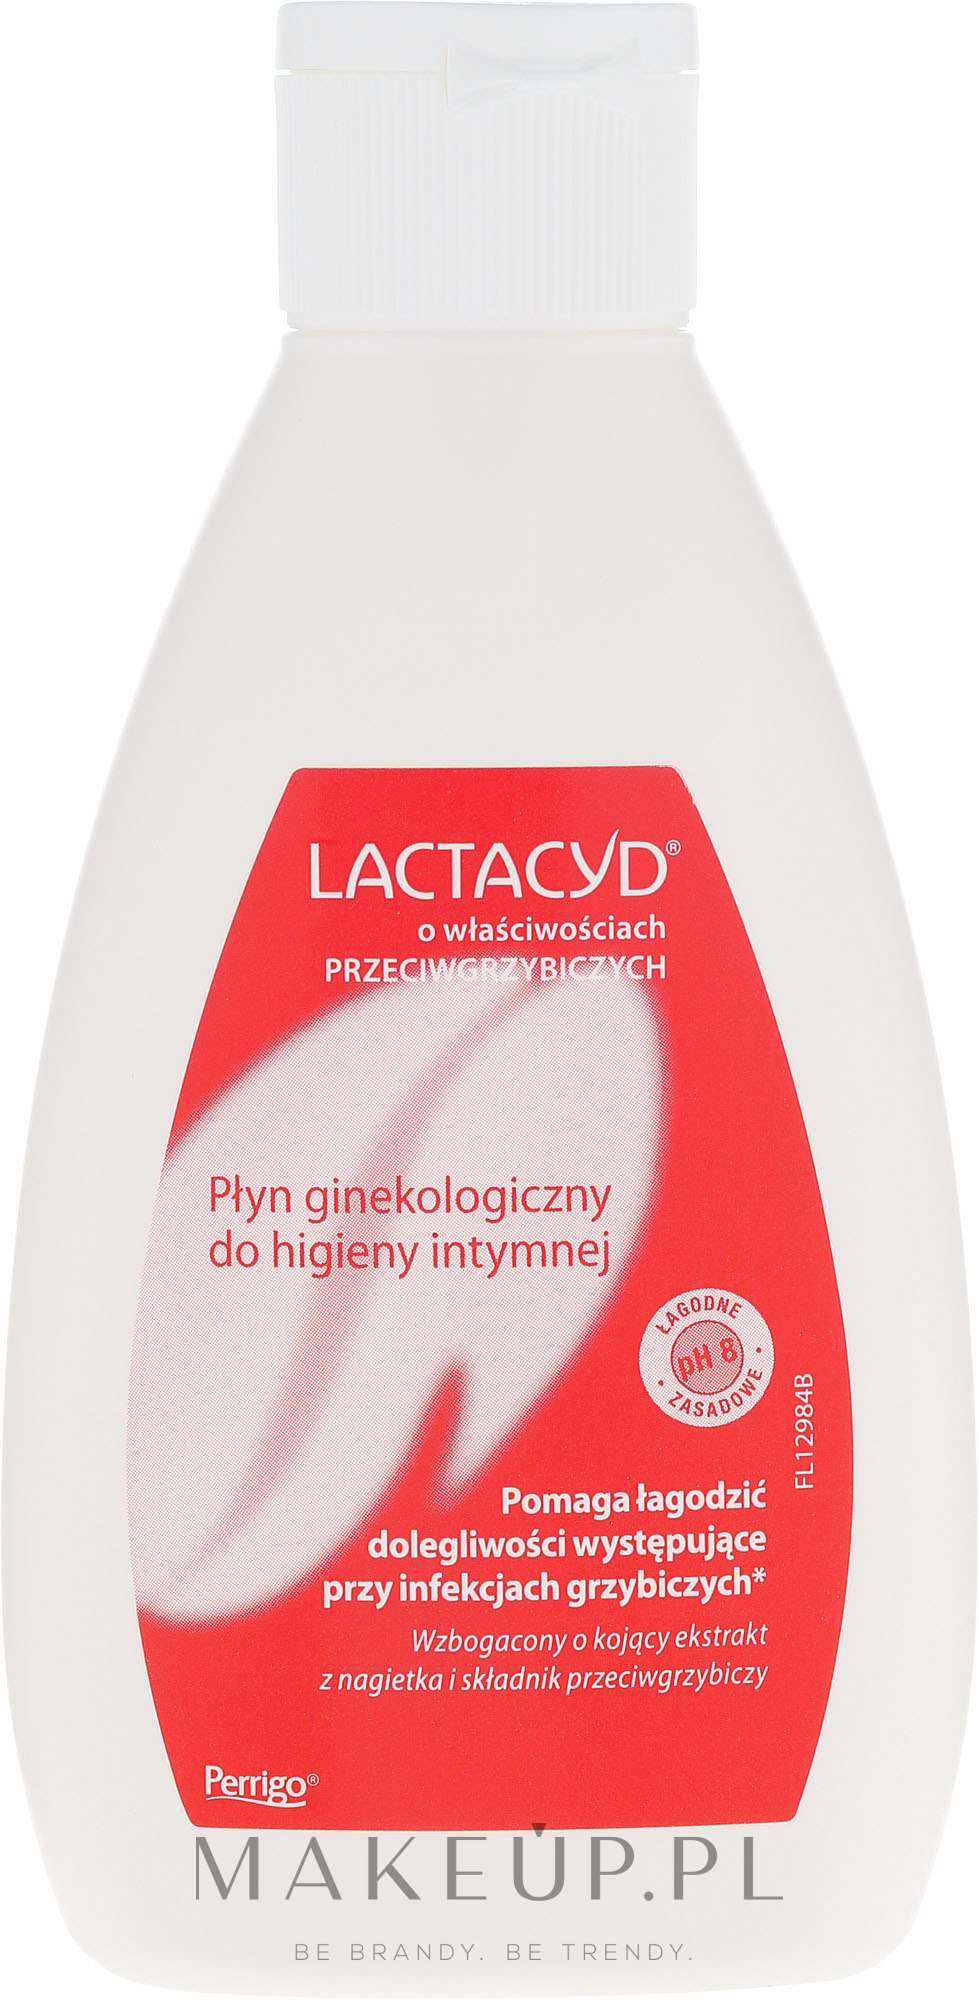 Przeciwgrzybiczy płyn ginekologiczny do higieny intymnej - Lactacyd — фото 200 ml